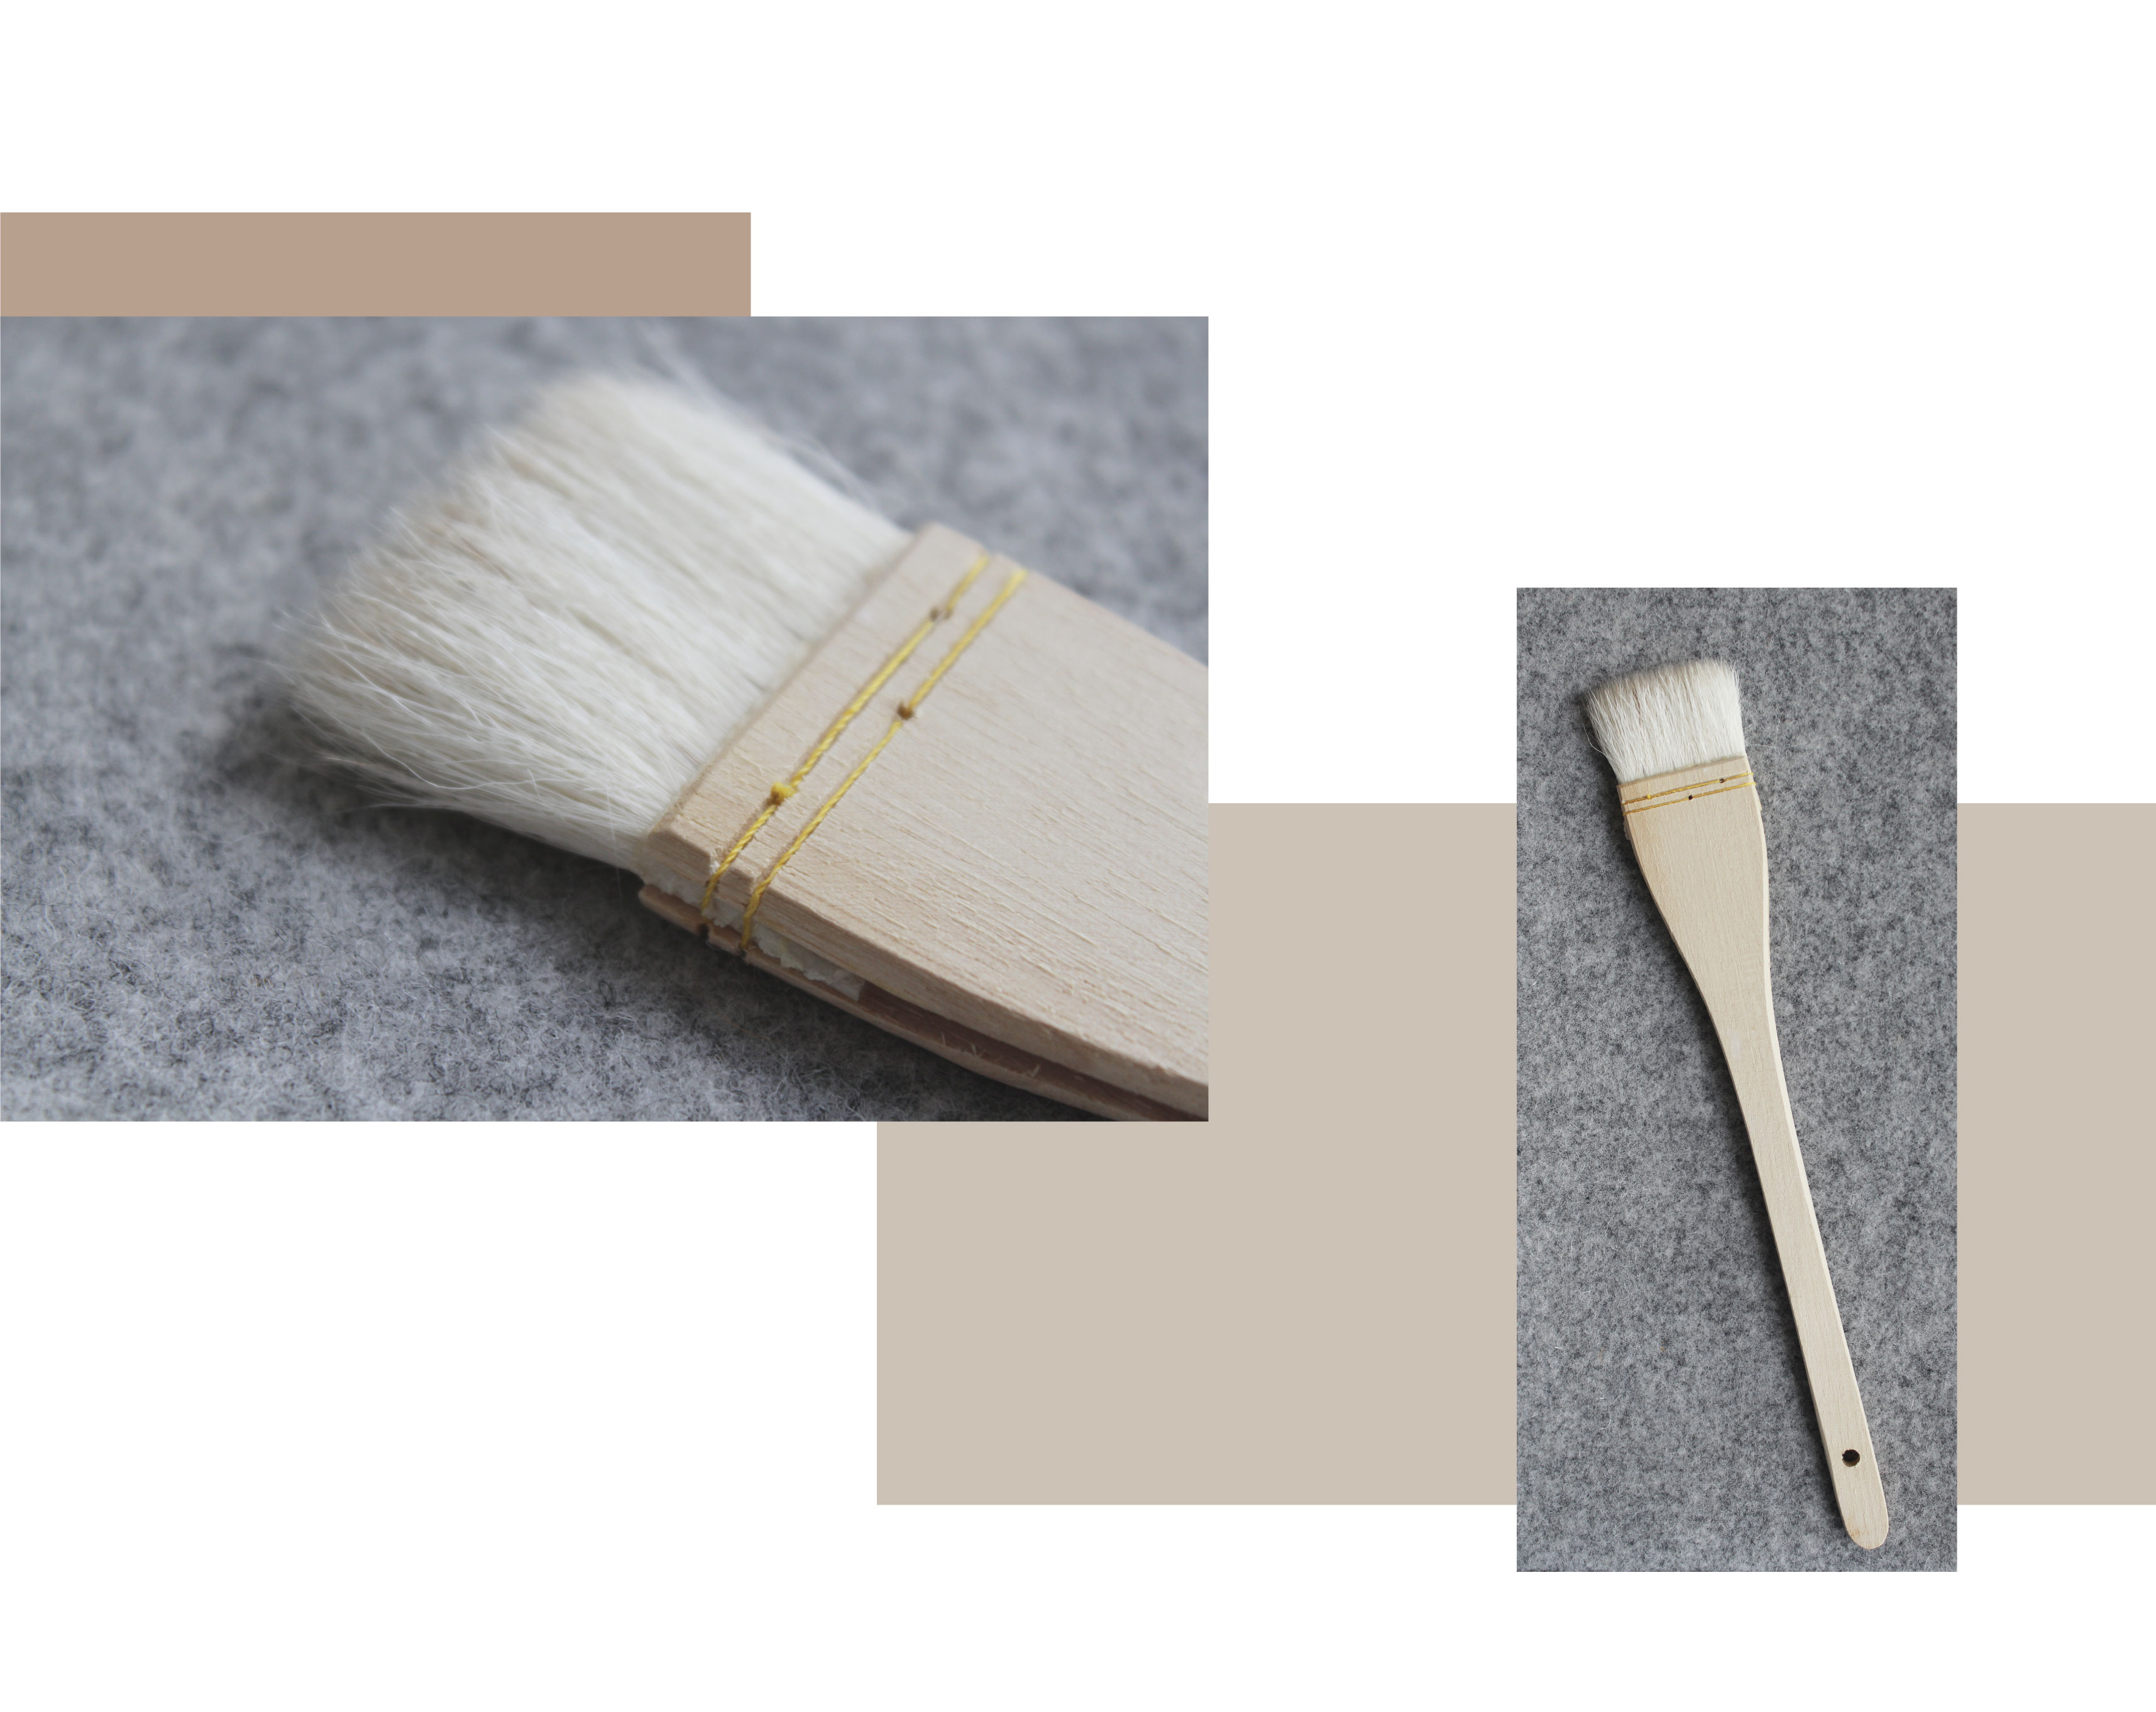 două imagini, unul shwing un aproape de o perie glazura merluciu pe un fundal gri. Al doilea arată peria completă de merluciu. Mâner din lemn, cusături, perie fibroasă.